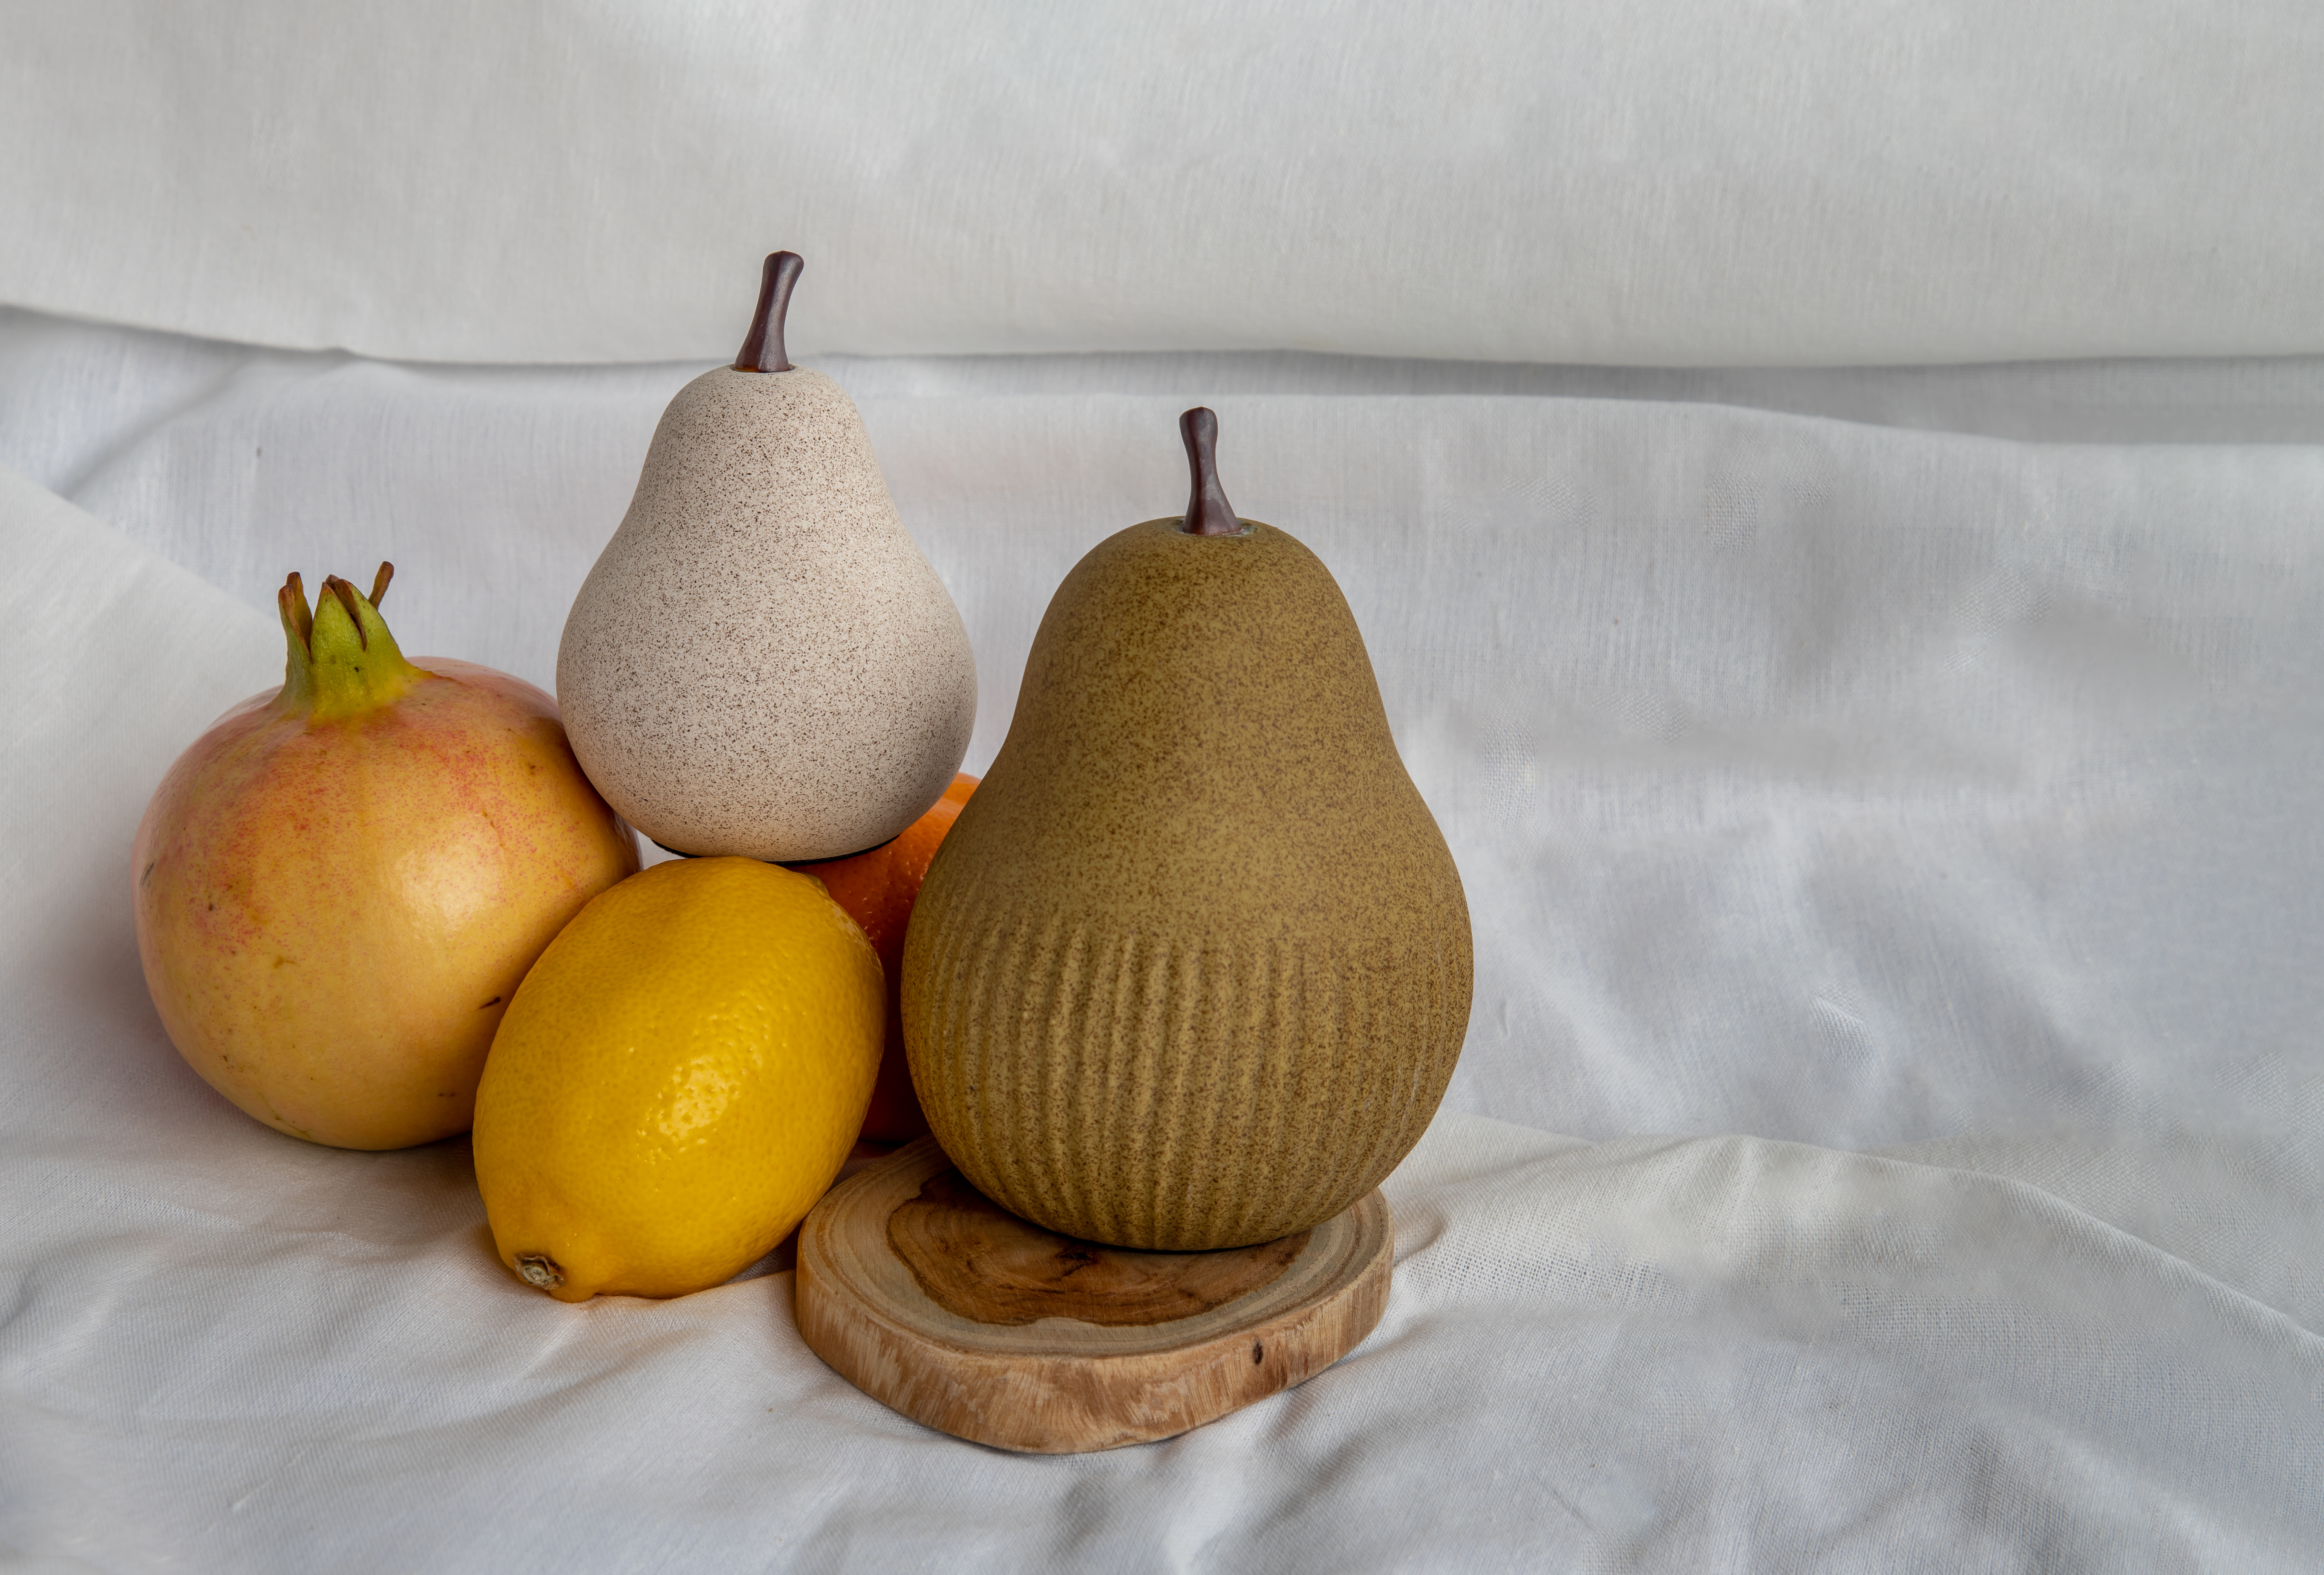 Peras de cerámica con limón y granada | Fuente: Shutterstock